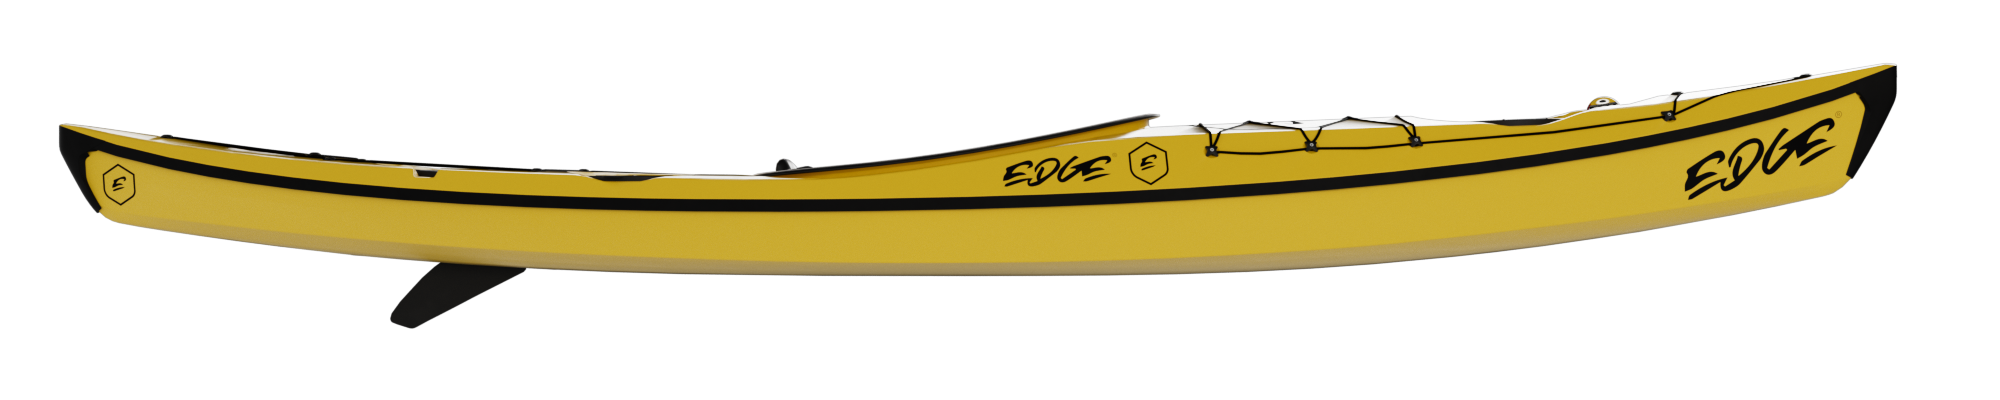 Edge Kayak Alnes Ocean yellow